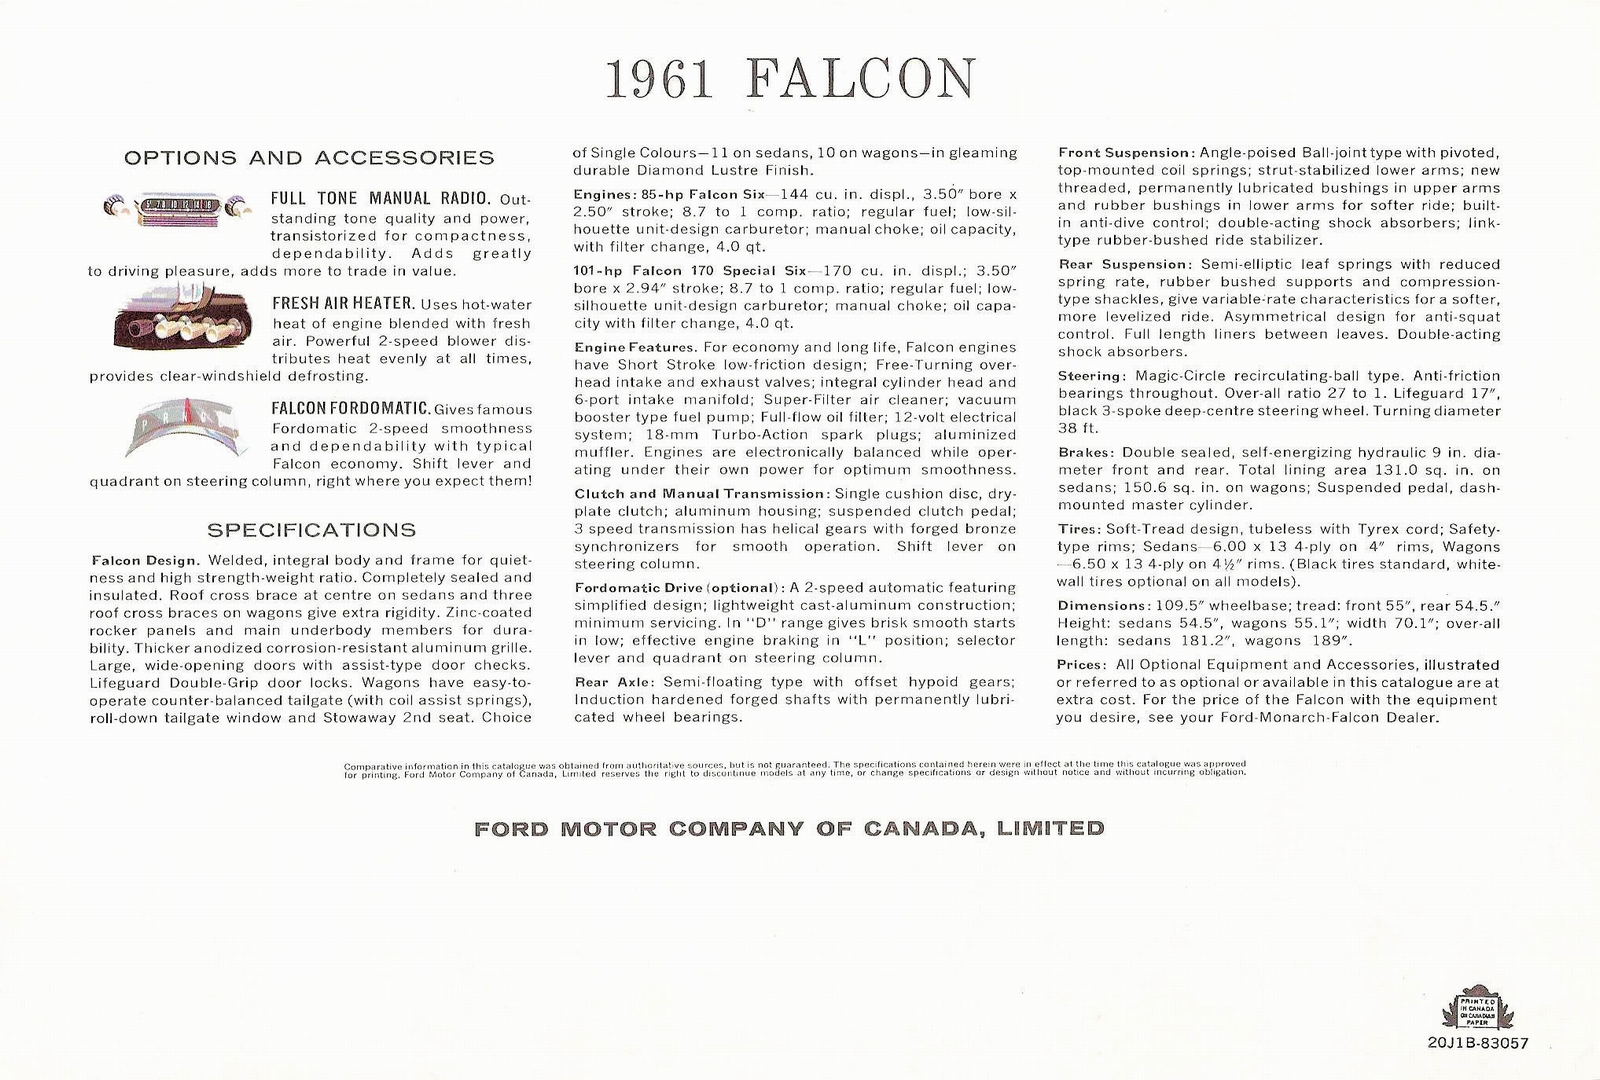 n_1961 Ford Falcon (Cdn)-06.jpg